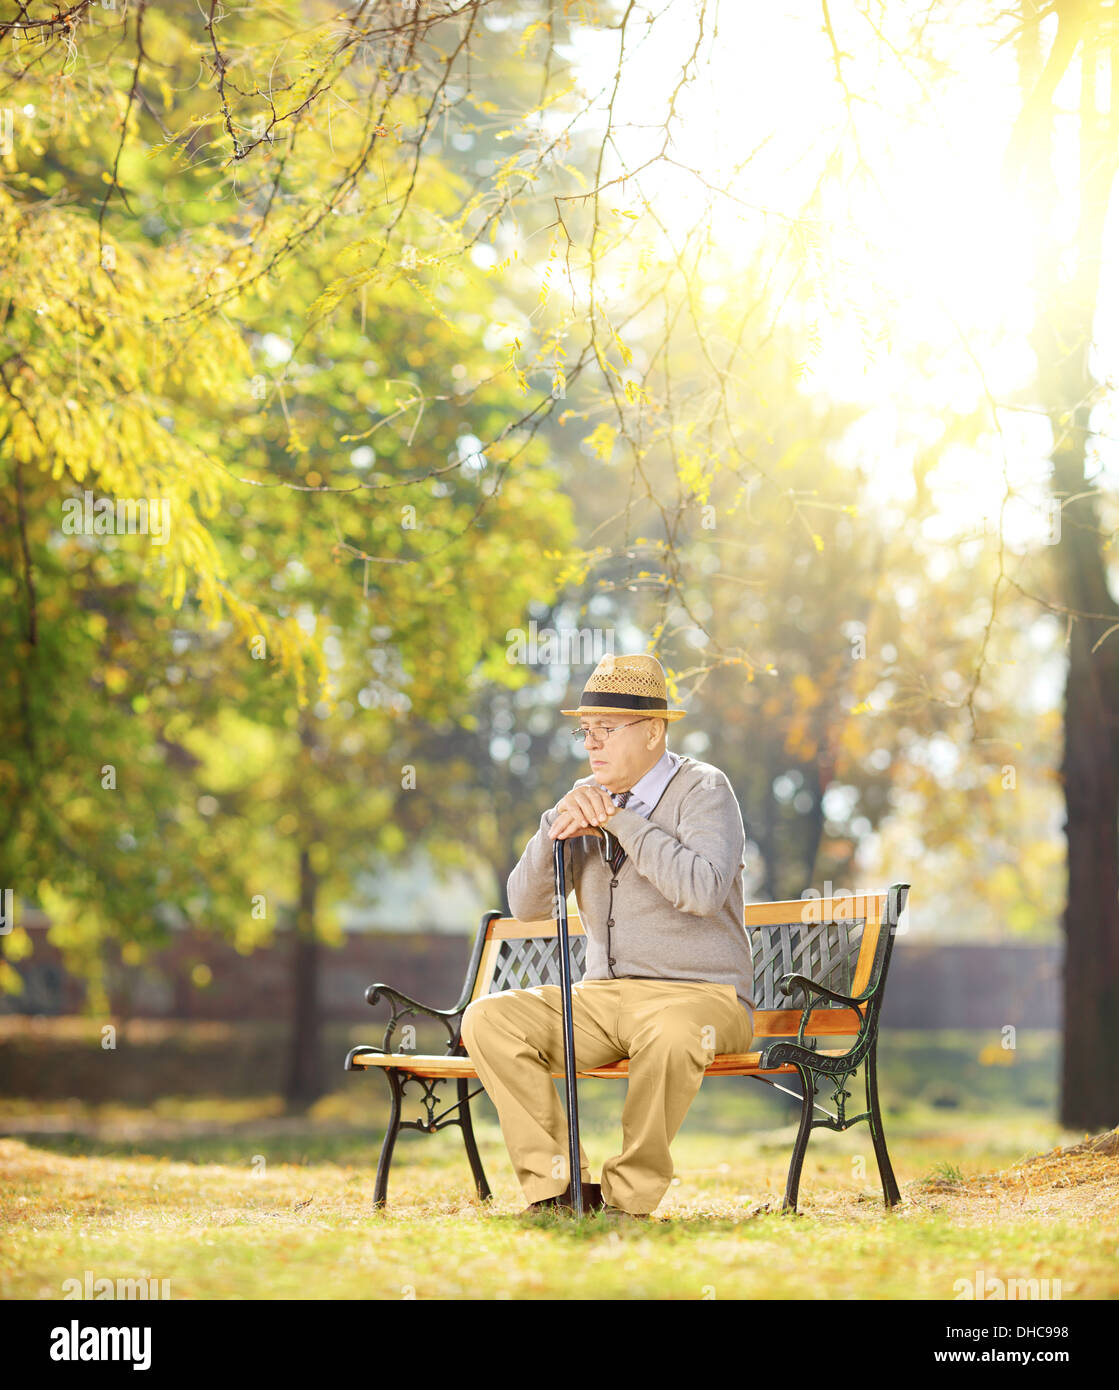 Sad man avec une canne assis sur banc en bois dans un parc sur une journée ensoleillée Banque D'Images